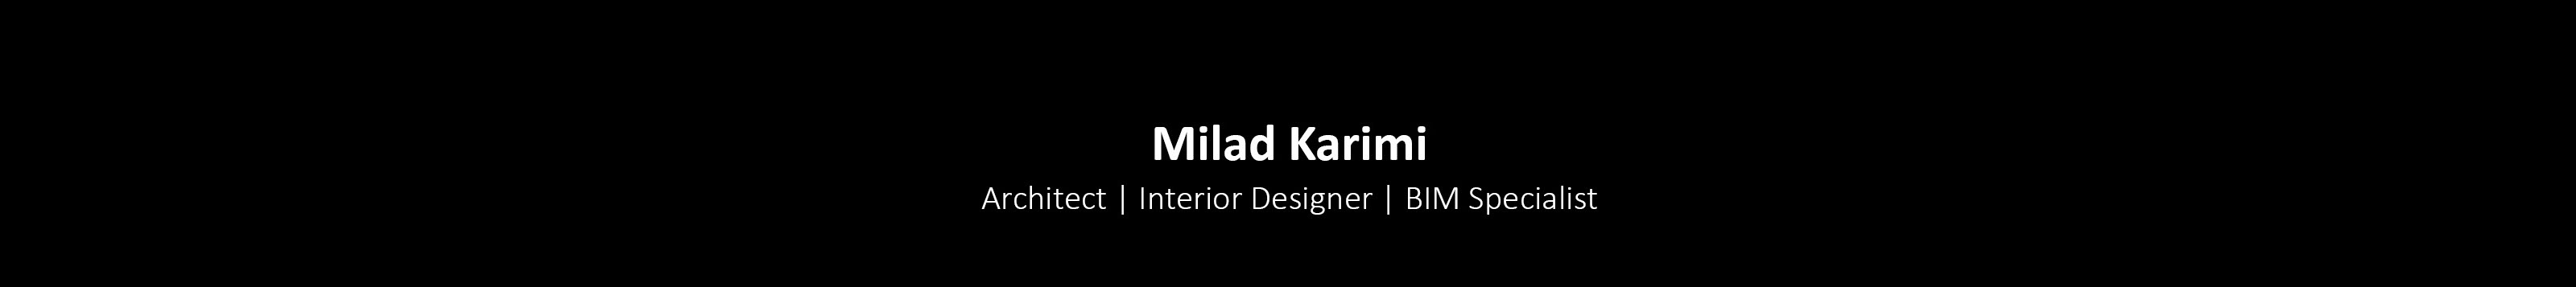 Milad Karimi 的個人檔案橫幅